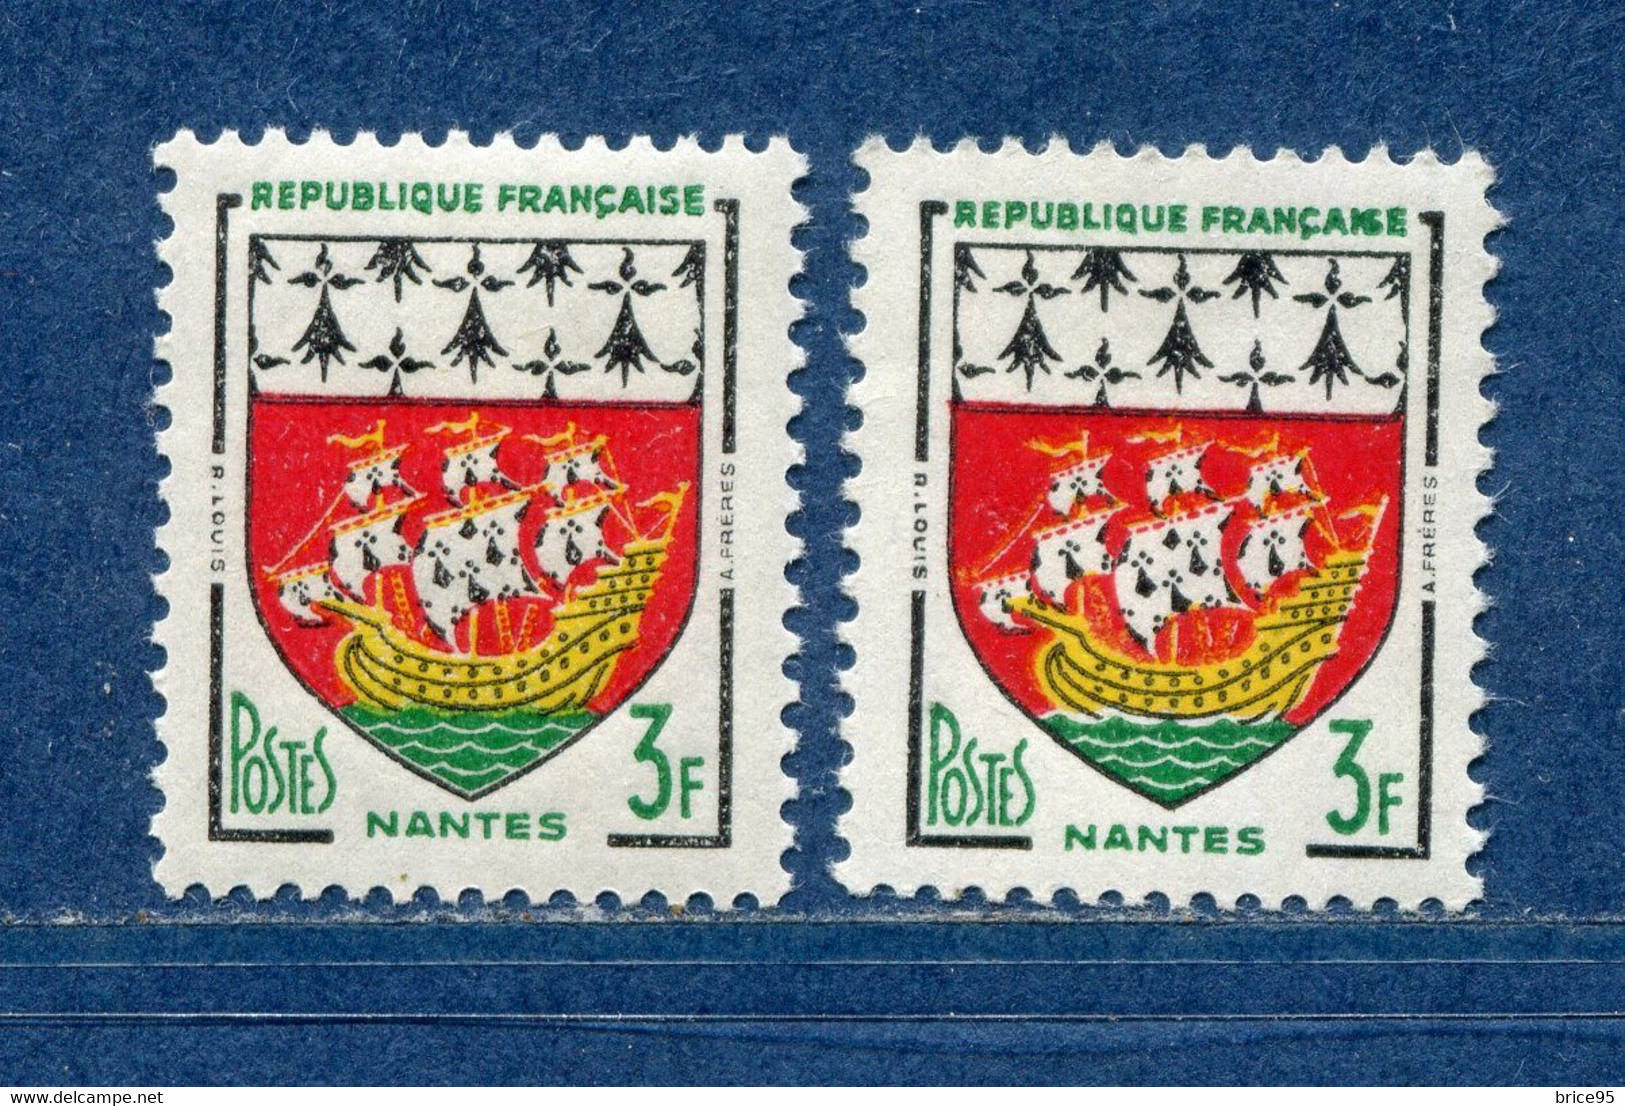 ⭐ France - Variété - YT N° 1185 - Couleurs - Pétouilles - Neuf Sans Charnière - 1958 ⭐ - Ongebruikt